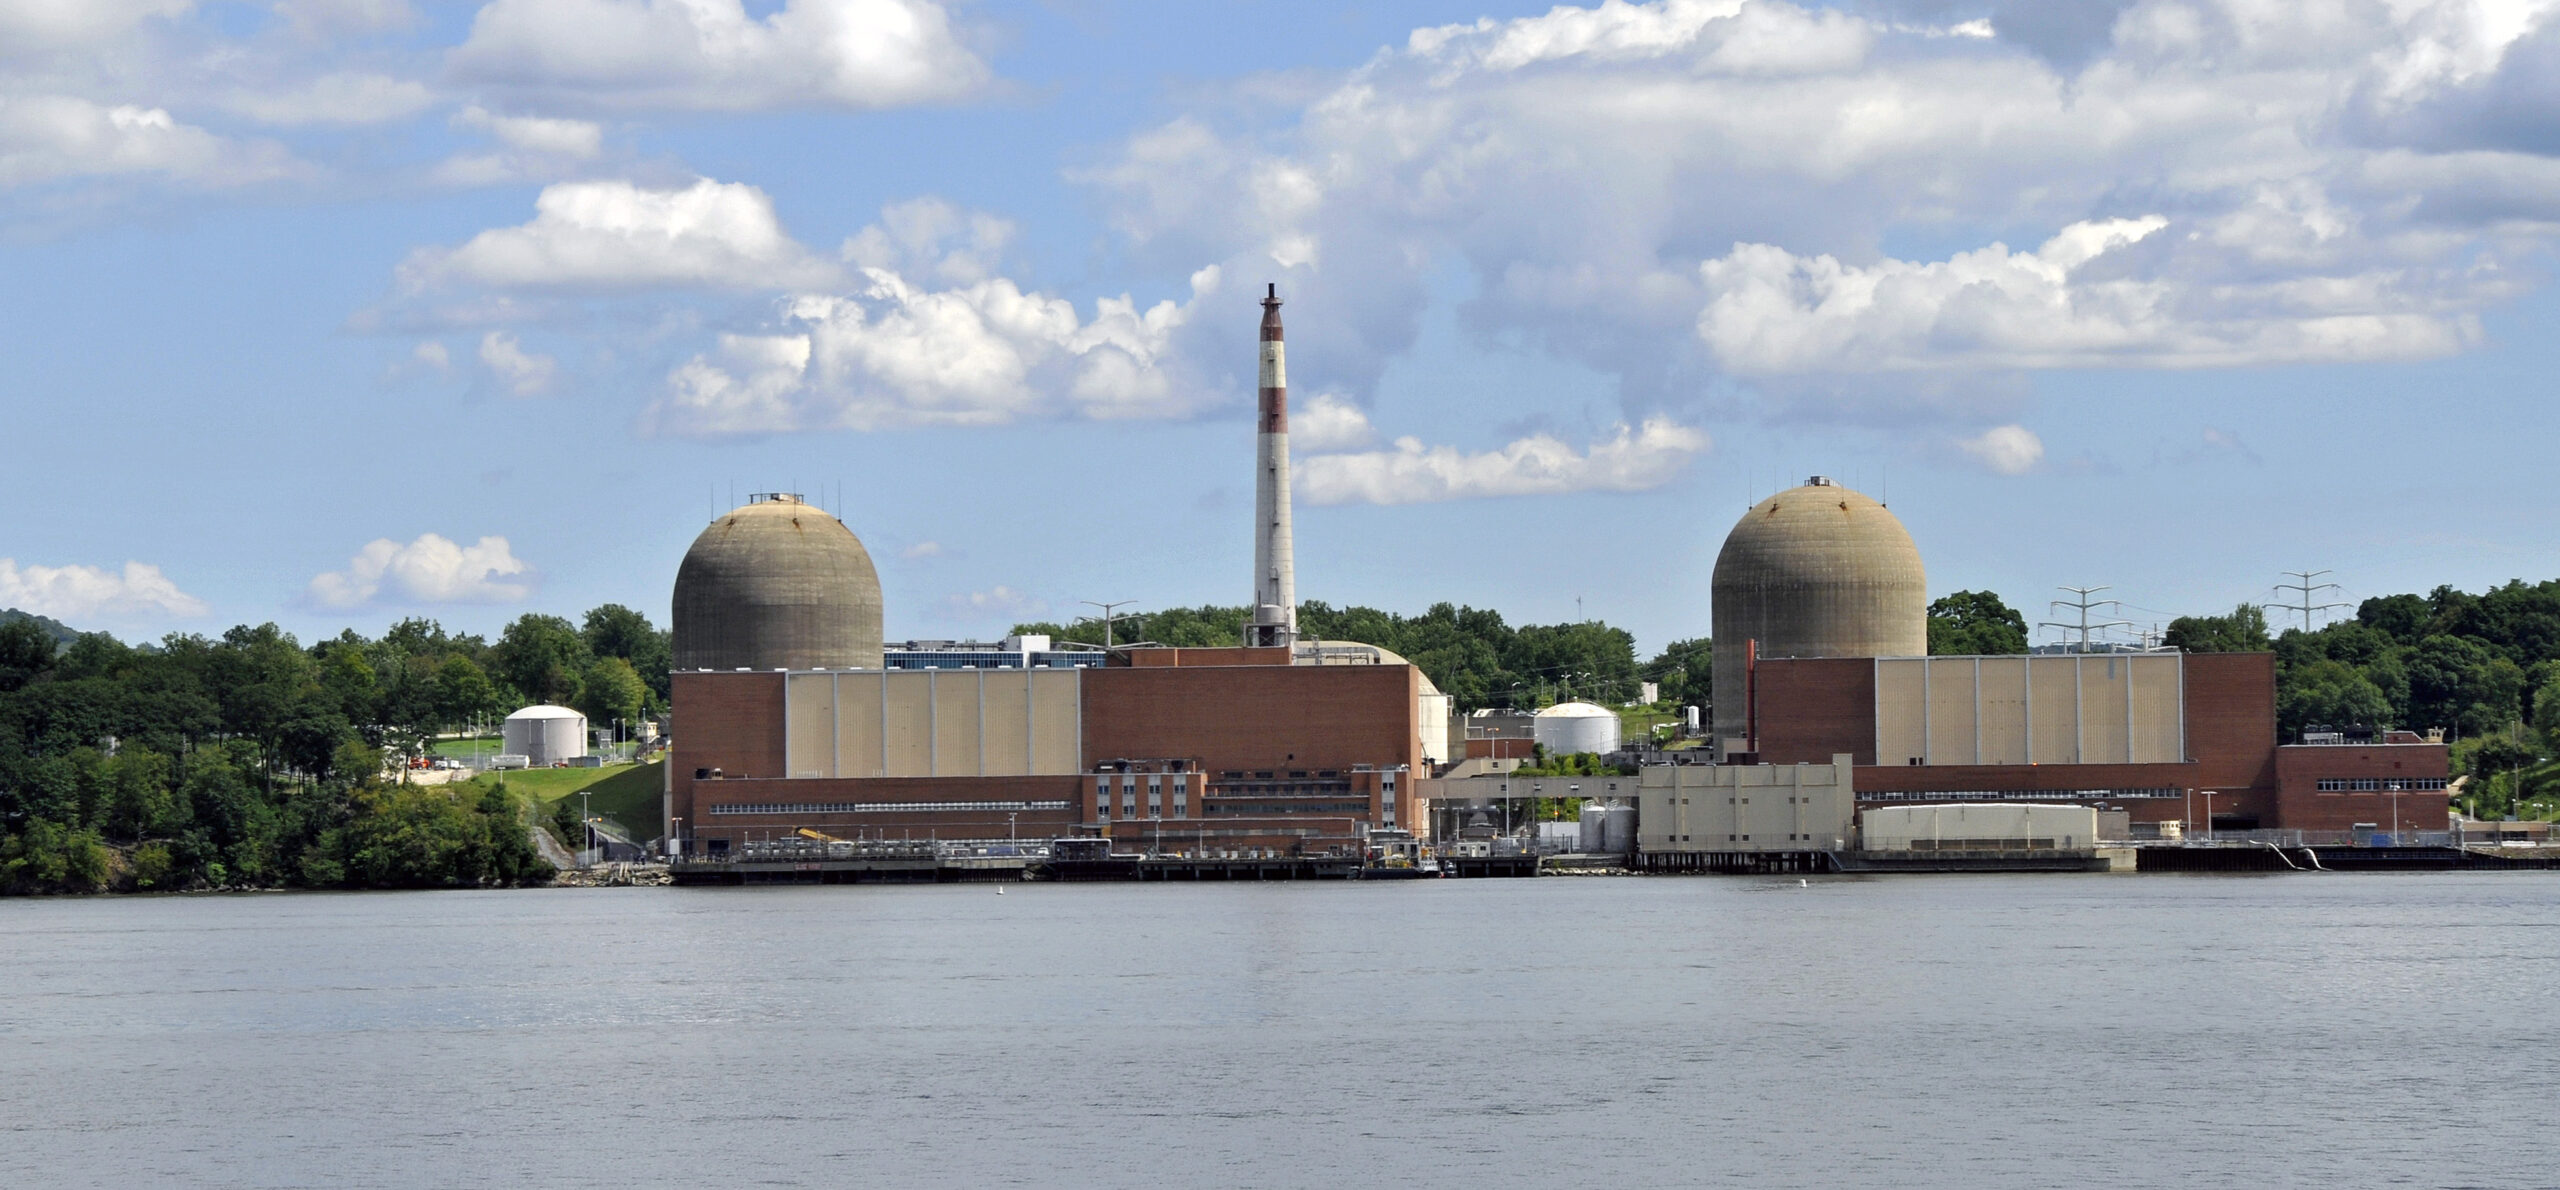 AQShning Nyu-York shtatidagi Buchanan shahridagi Indian Point energiya markazi dunyodagi birinchi toriy reaktori joylashgan joy edi.